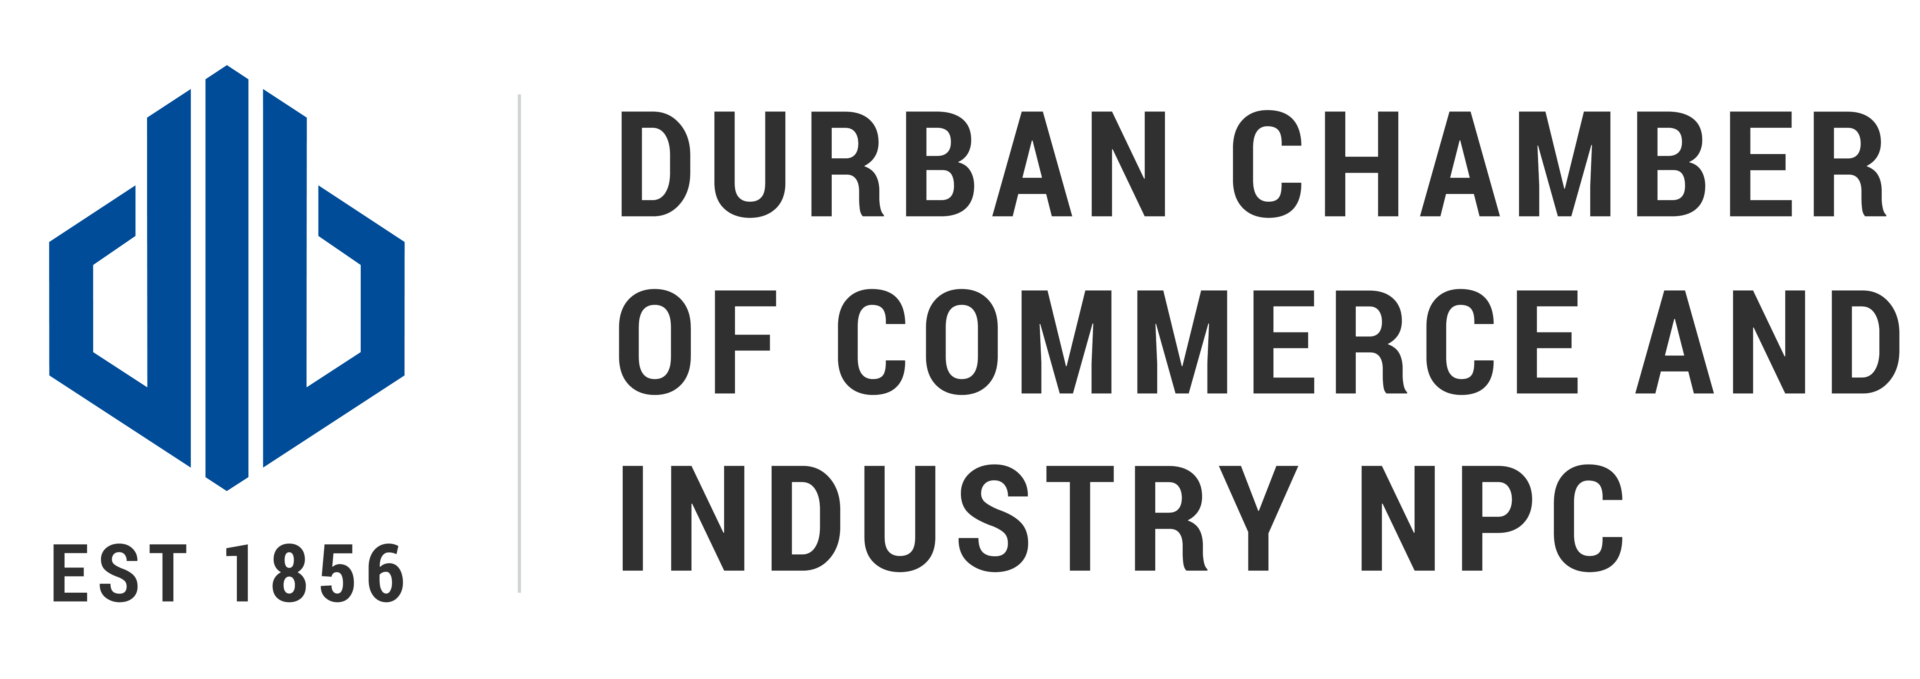 Durban Chamber of Commerce logo